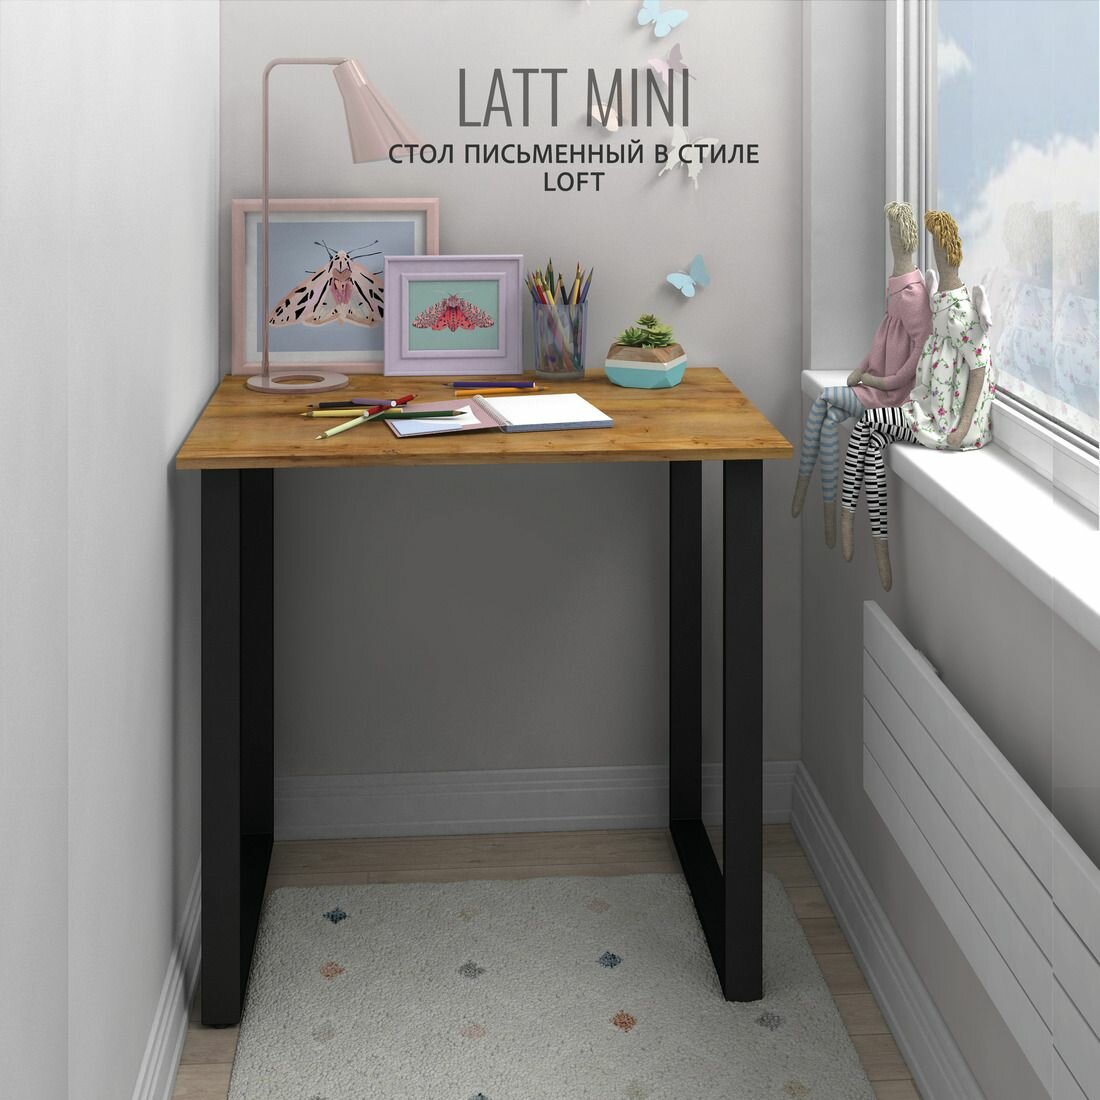 Стол письменный LATT mini коричневый компьютерный обеденный Нераскладной офисный мебель лофт 90х60х75 см Гростат